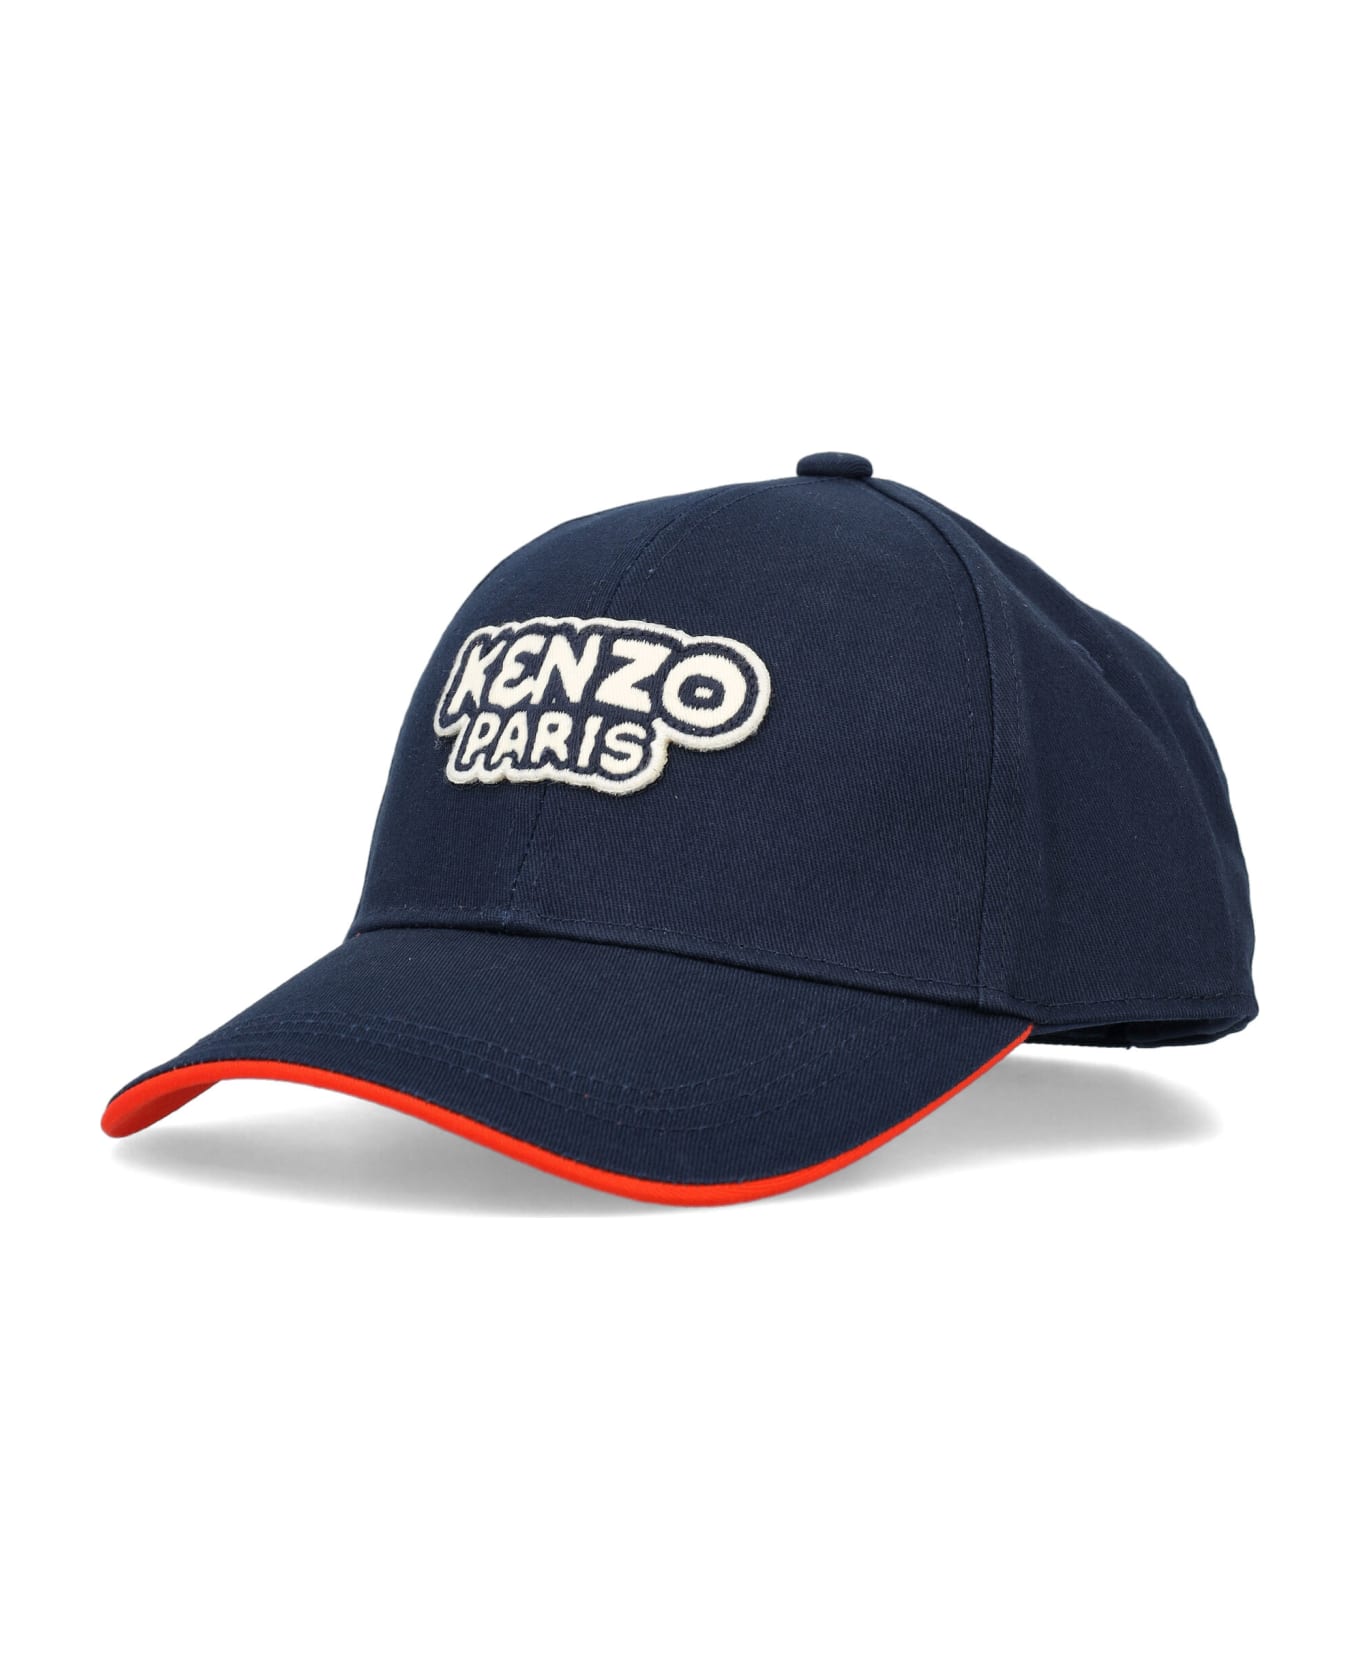 Kenzo Kids Logo Cap - NAVY